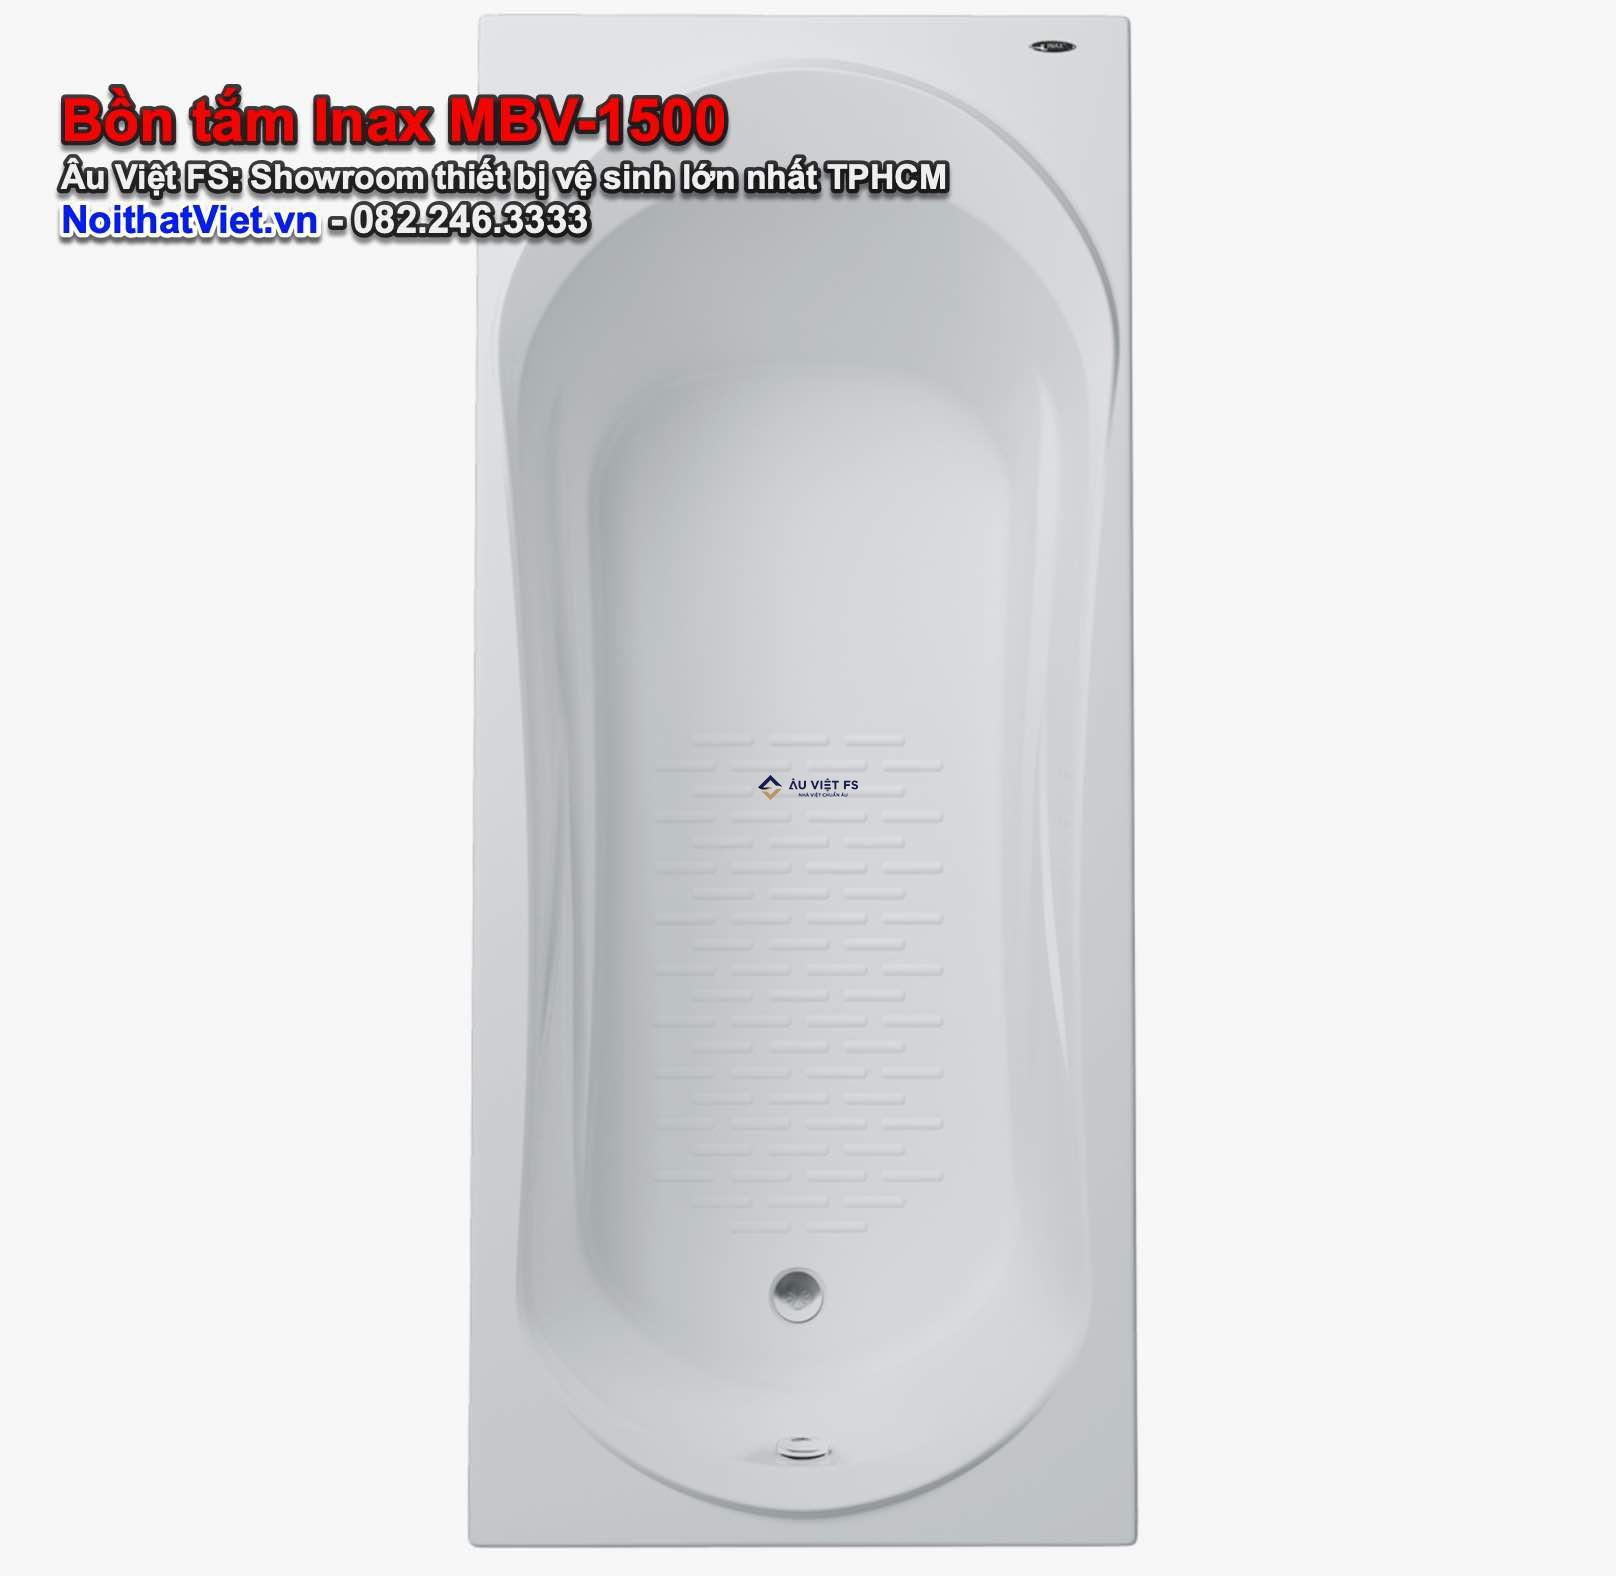 Đánh giá bồn tắm Inax MBV-1500, Inax MBV-1500, Inax, Bồn tắm Inax, Bồn tắm xây, Giá Inax, Inax TPHCM, Catalog Inax